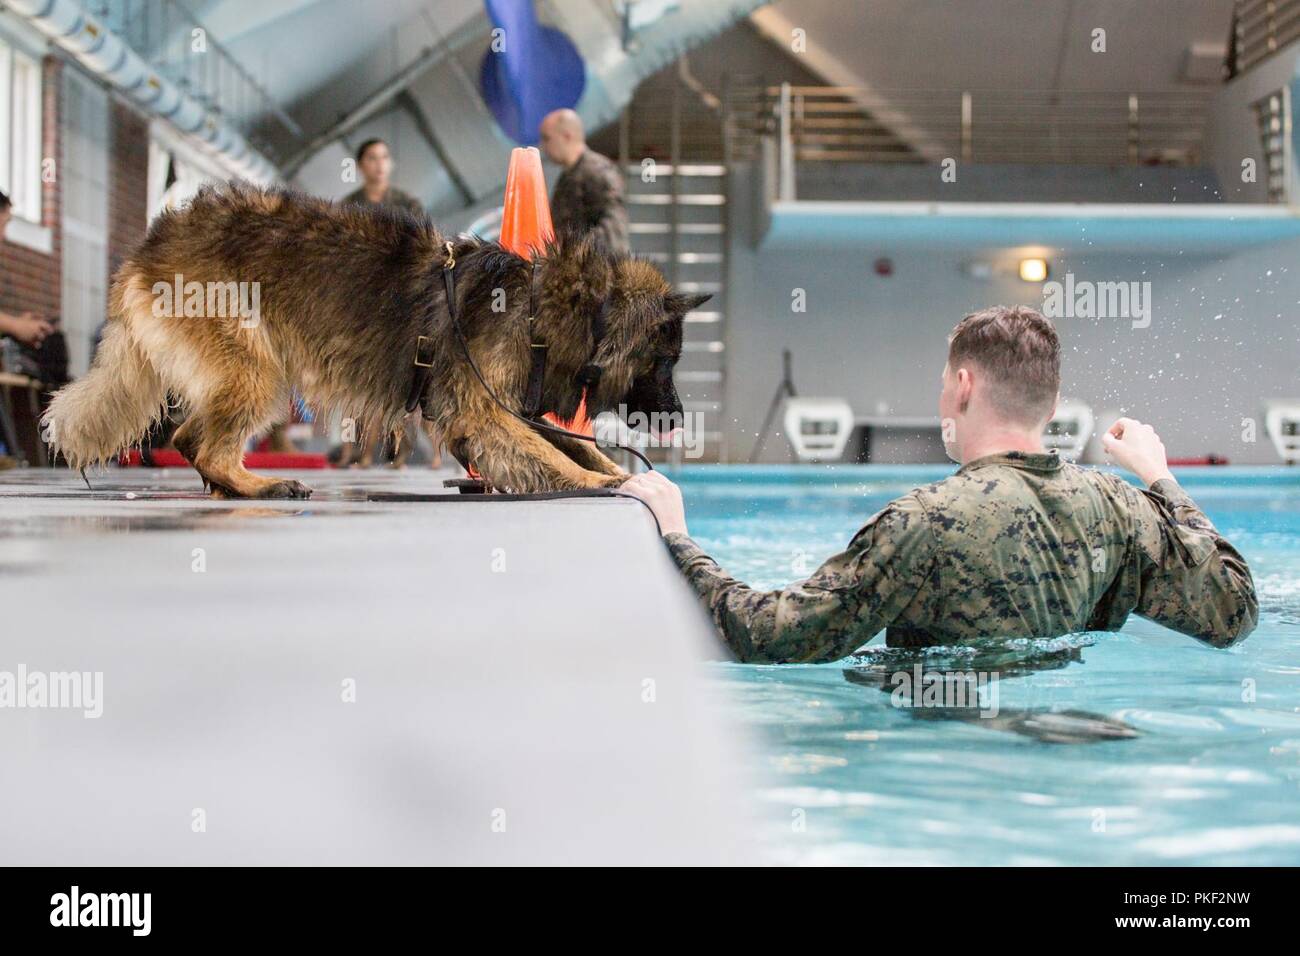 Le Sergent Darren Groseclose, un 2e Bataillon de l'application de la Loi de travail militaire dog-handler, exécute des routines d'entrée de l'eau avec son chien, Charlie, qu'ils nagent dans la zone 5 à la piscine Marine Corps Base Camp Lejeune, N.C., 3 août 2018. 2e LEB pratiqué l'agression de la formation dans le cadre d'une formation spécialisée afin de familiariser leurs chiens avec de l'eau. La 2e LEB chiens de travail militaire bénéficient de ce type de formation en raison de ne pas être exposé à l'eau pendant les périodes de formation initiale des tactiques et devenir de meilleurs habitués à effectuer des tâches dans des situations atypiques. Banque D'Images